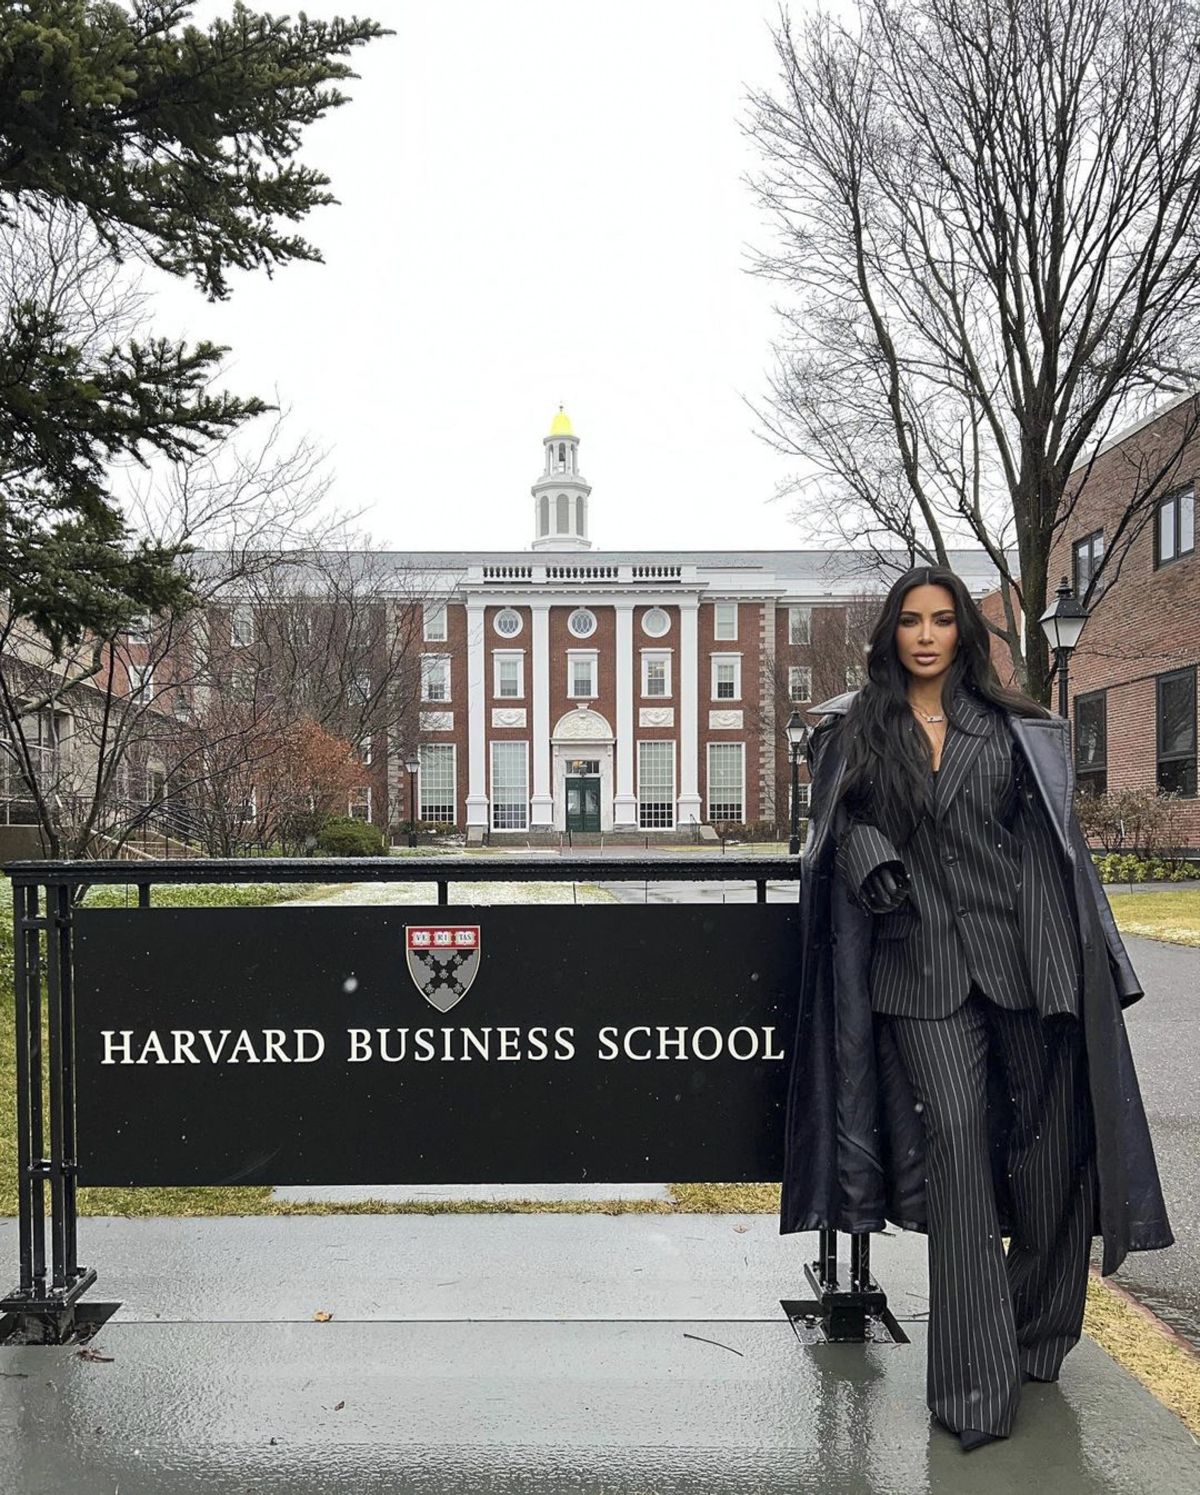 "Не умничай": Ким Кардашьян высмеяли за выступление в Гарвардской бизнес-школе